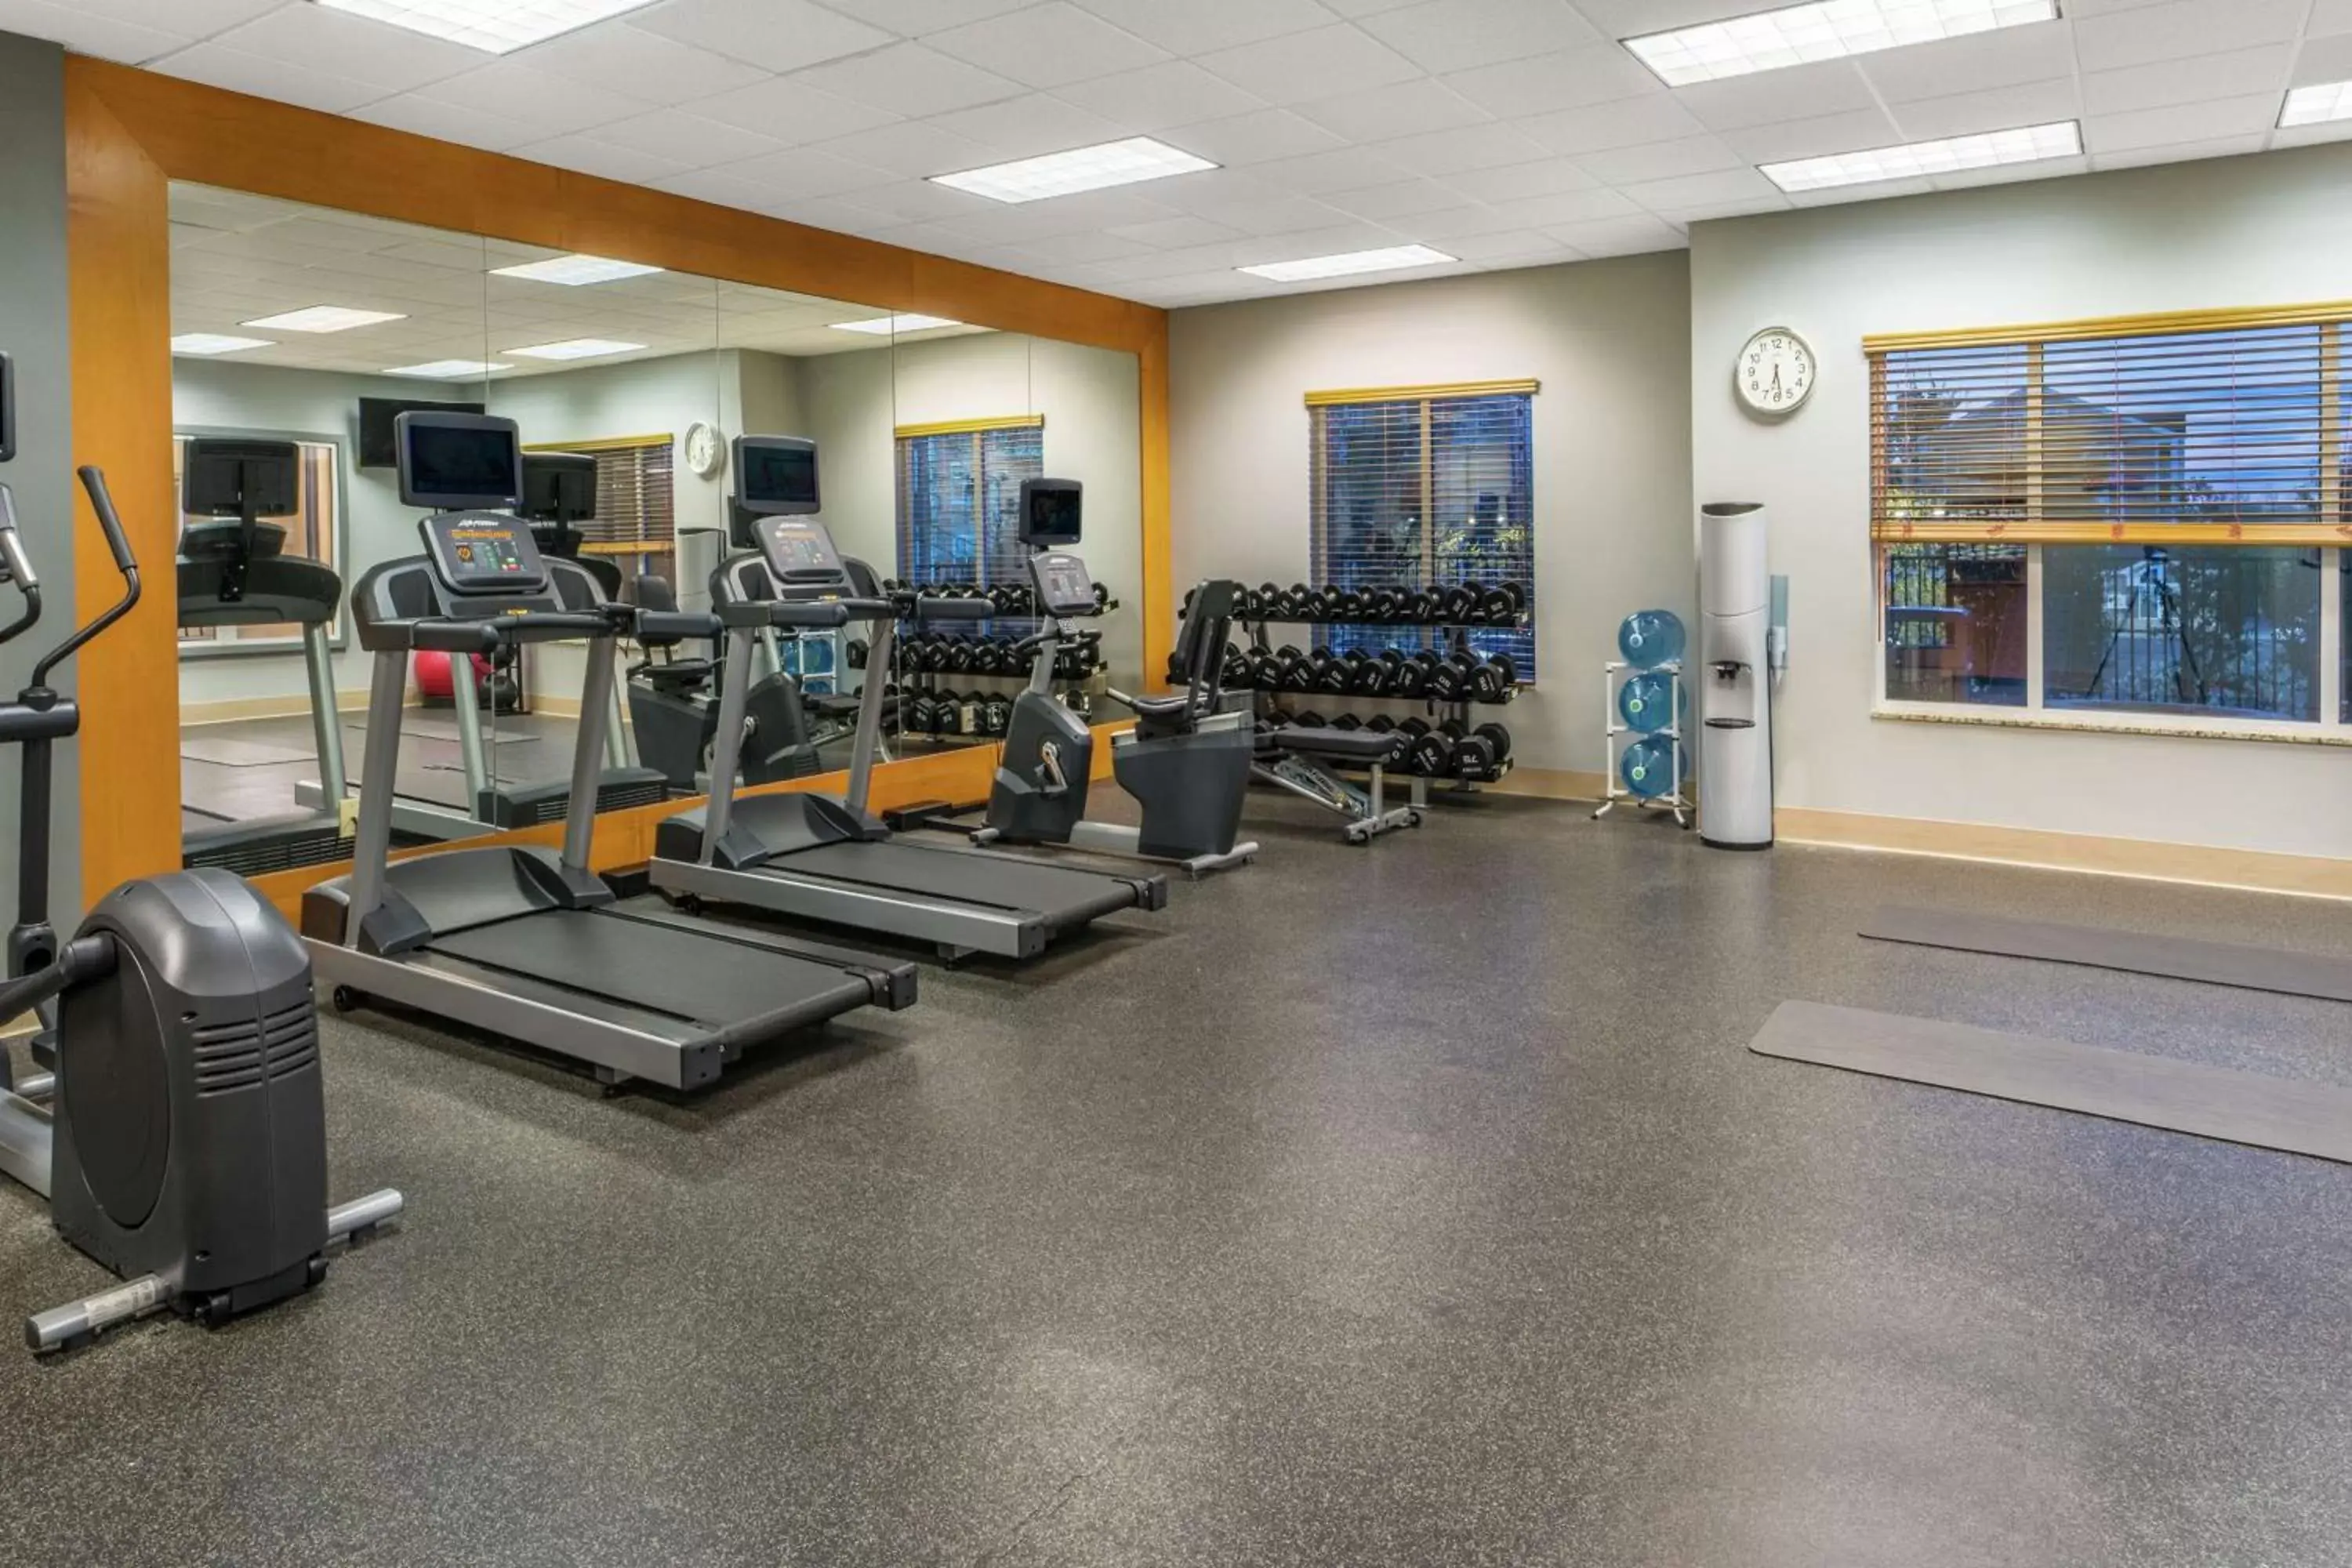 Fitness centre/facilities, Fitness Center/Facilities in Hilton Garden Inn Blacksburg University